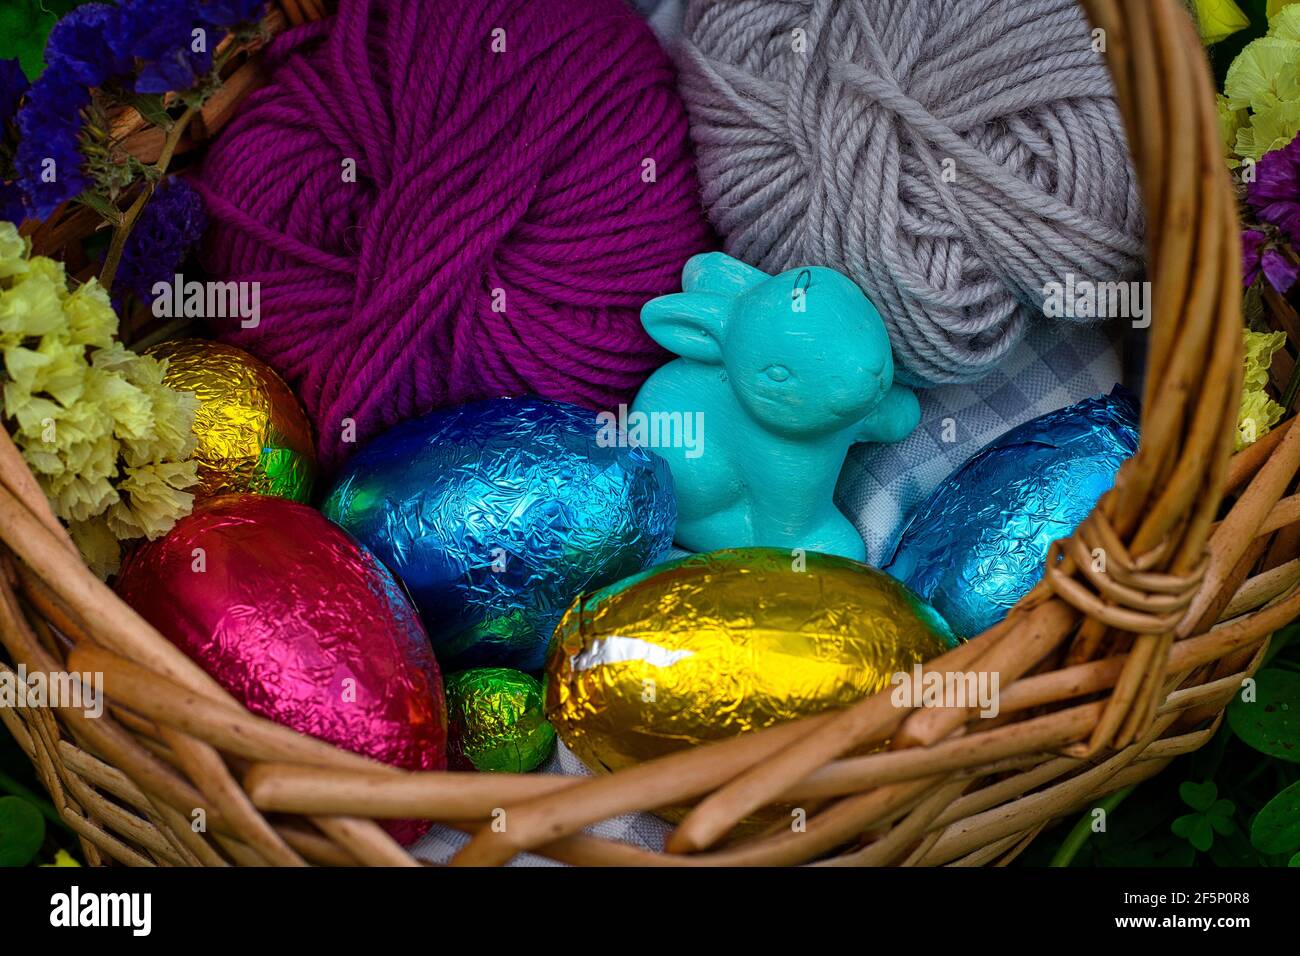 Un cestino decorato per una caccia all'uovo. Ha uova avvolte in foglio di stagno colorato, un giocattolo di un coniglio e alcune palle di filato. E' circondato da vegetazione, cl Foto Stock